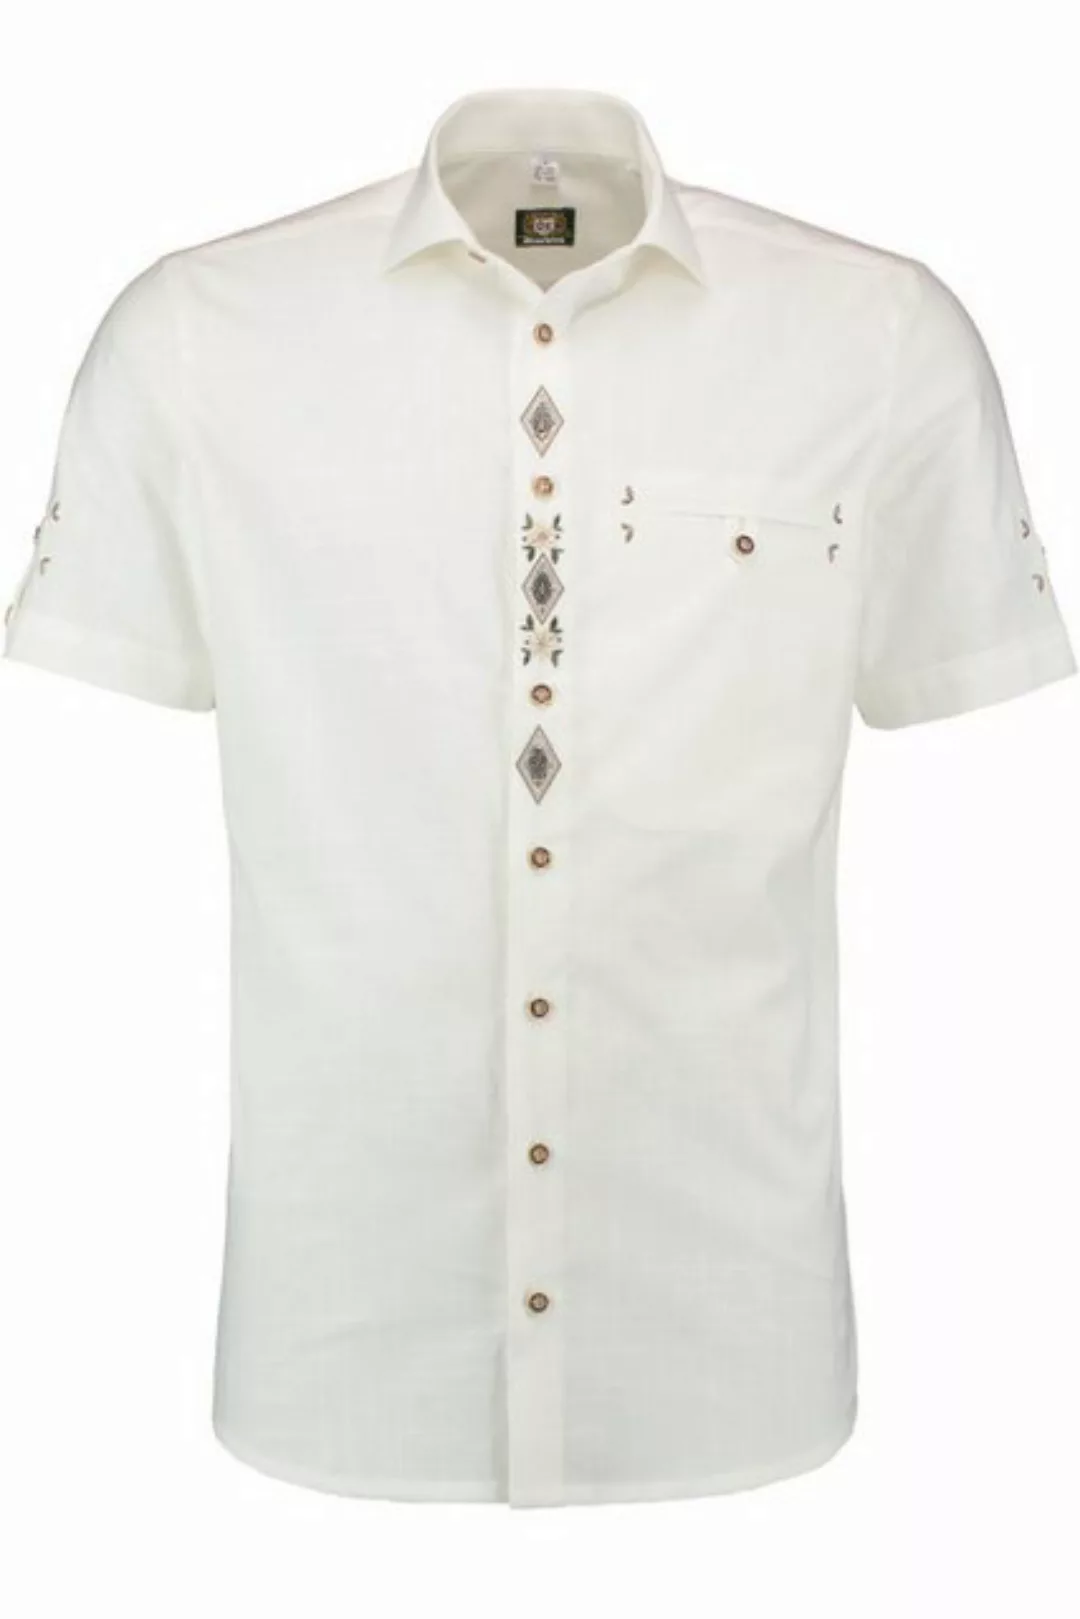 orbis Trachtenhemd Trachtenhemd - SAVIERO - offweiß günstig online kaufen